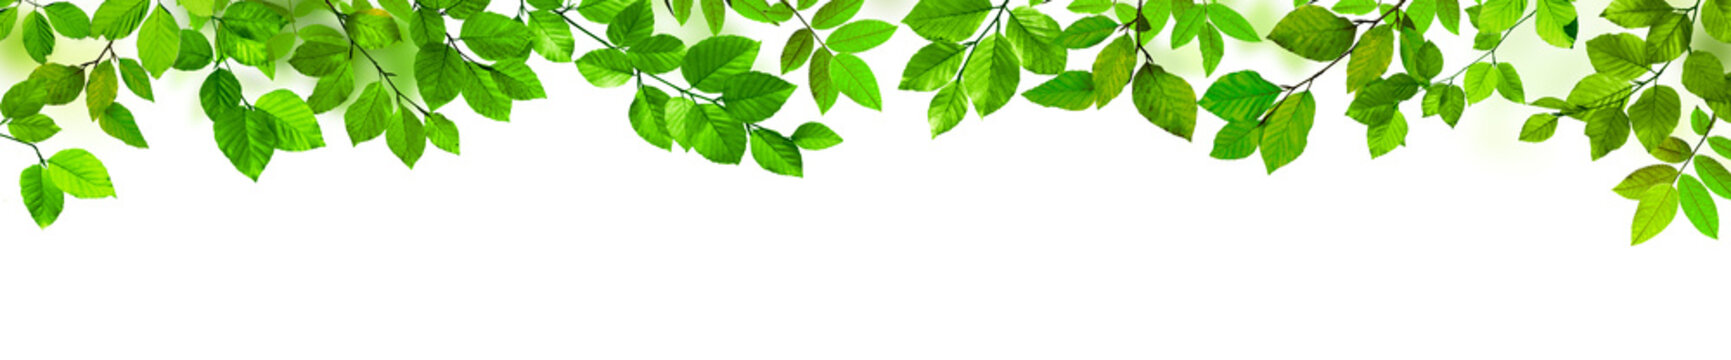 Grüne Blätter als Freisteller vor weißem Hintergrund